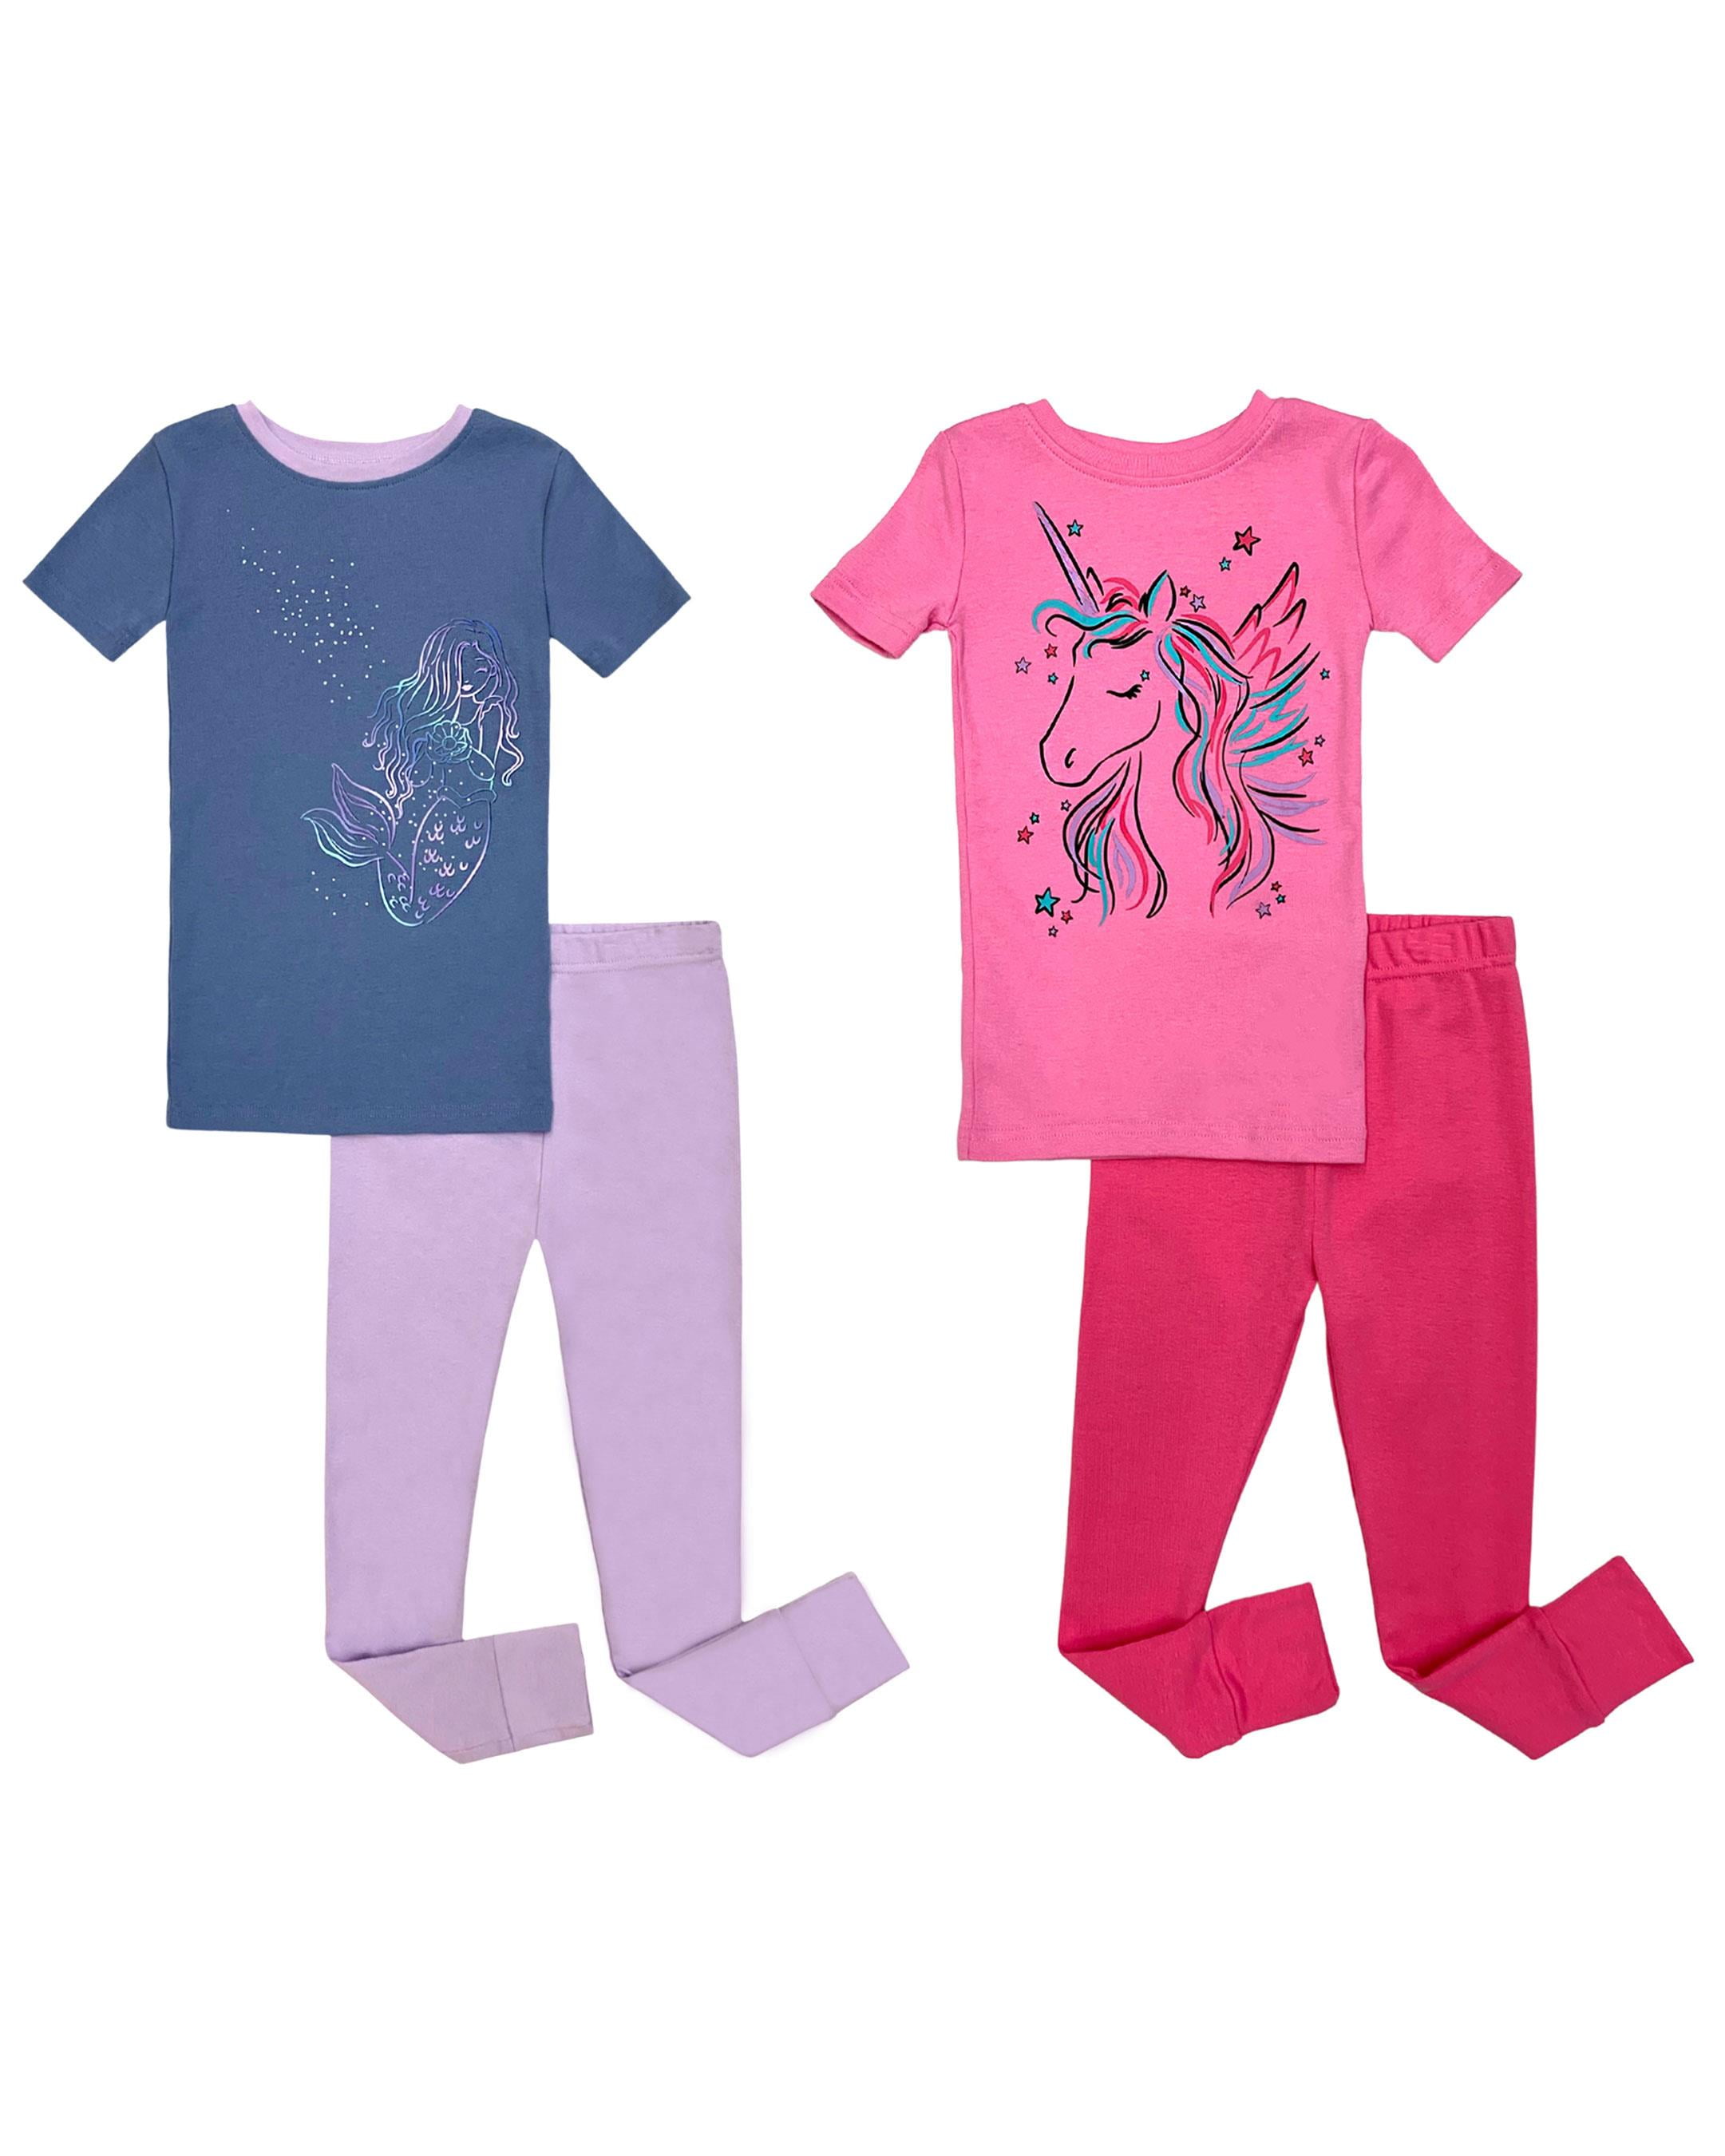 Personalised Birthday Pyjamas Celebration Turns 1 2 3 4 5 6 7 Clothing Unisex Kids Clothing Pyjamas & Robes Pyjamas Cotton pjs Boys pjs Girls pjs Unisex Age Pink Blue T shirt When I wake up 